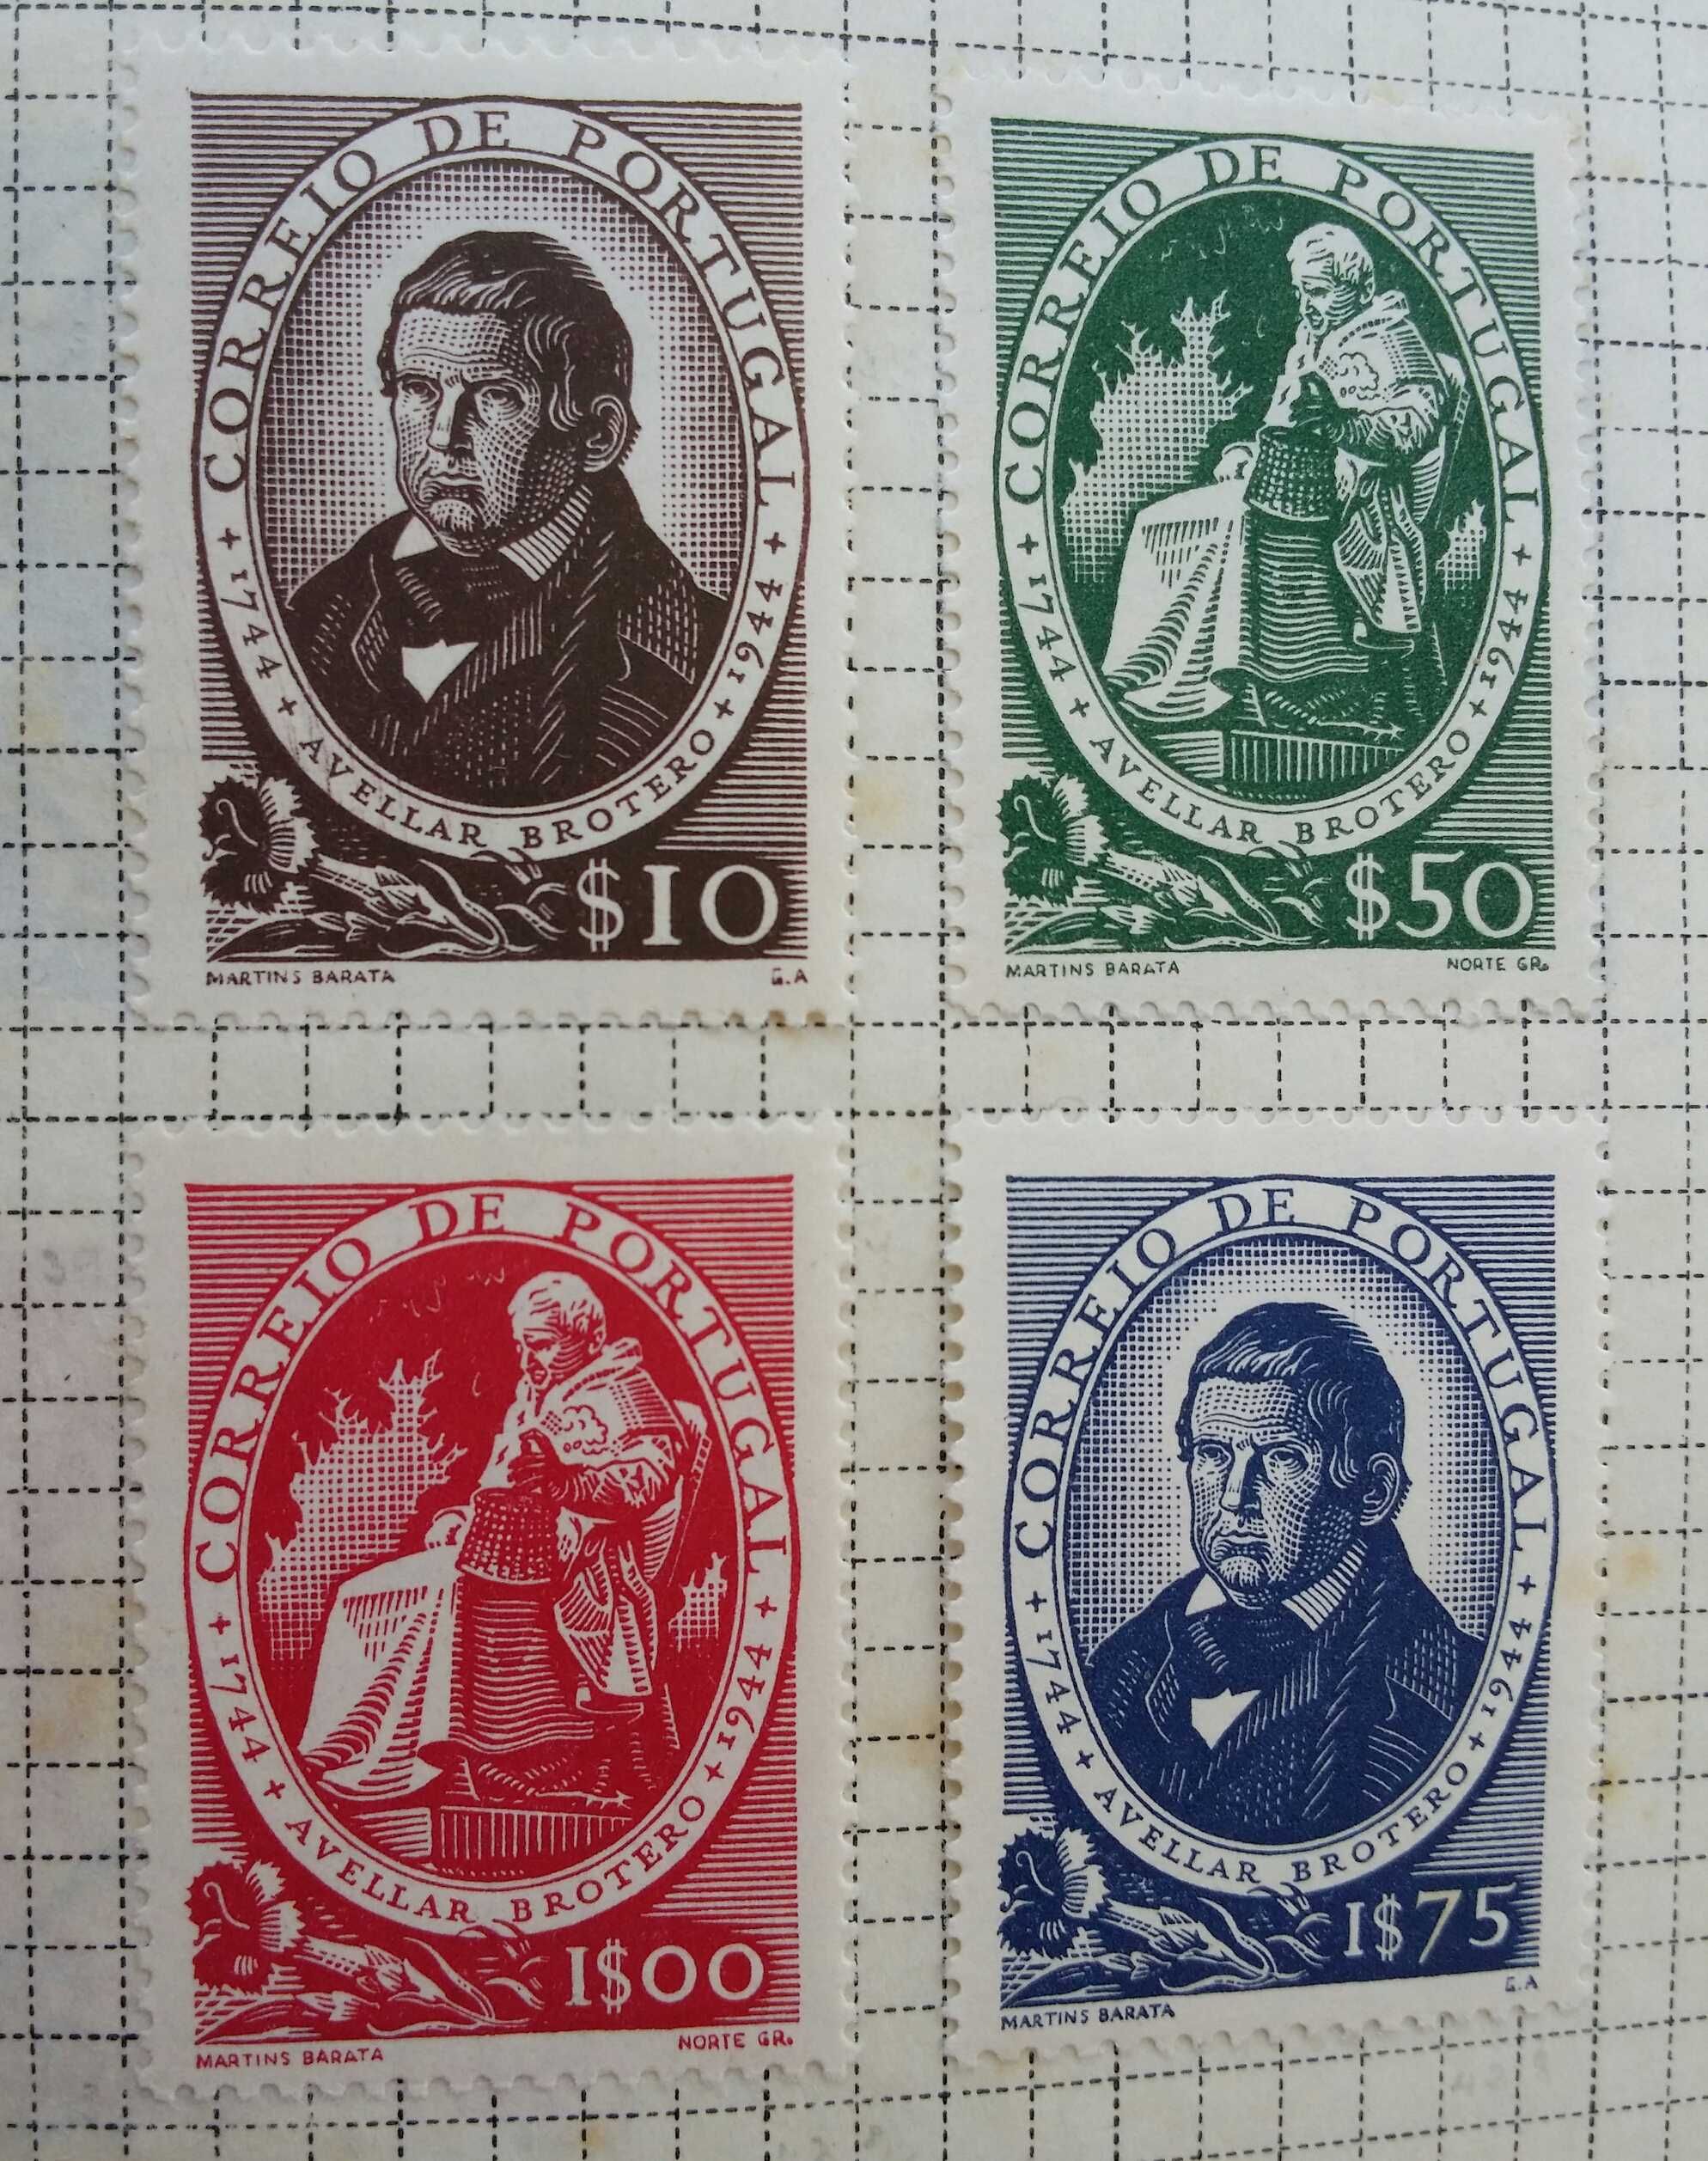 Filatelia selos Portugal 1944 - expo Filatélica e Félix Avelar Brotero